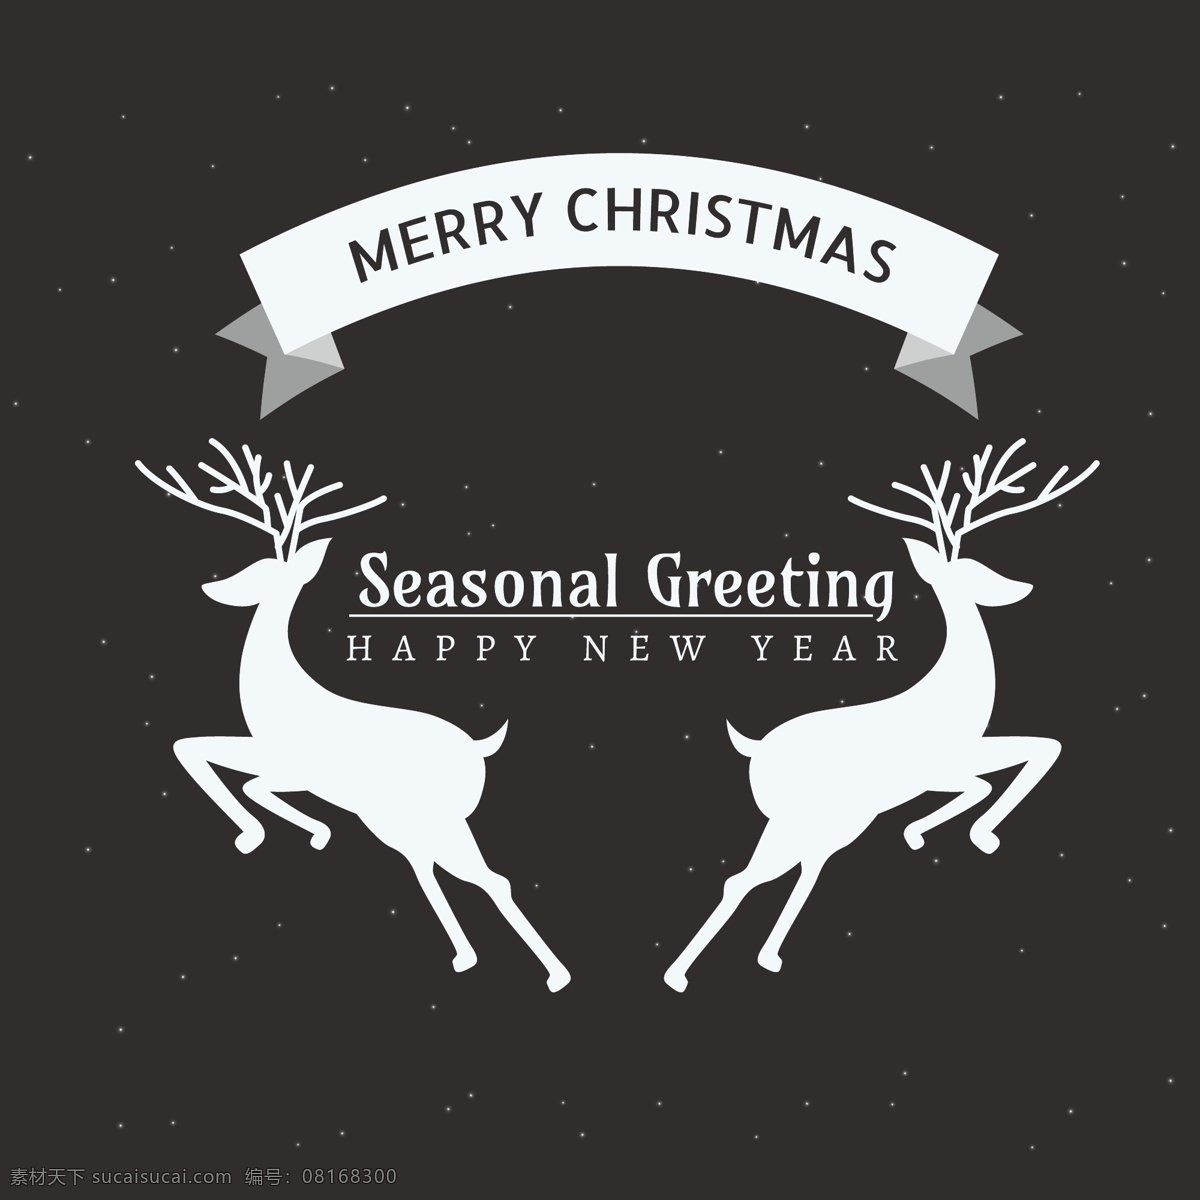 季节性 鹿 圣诞贺卡 丝带 圣诞 快乐 新的一年 快活 圣诞节 冬季 庆祝活动 雪花 新建 新年 庆祝 问候